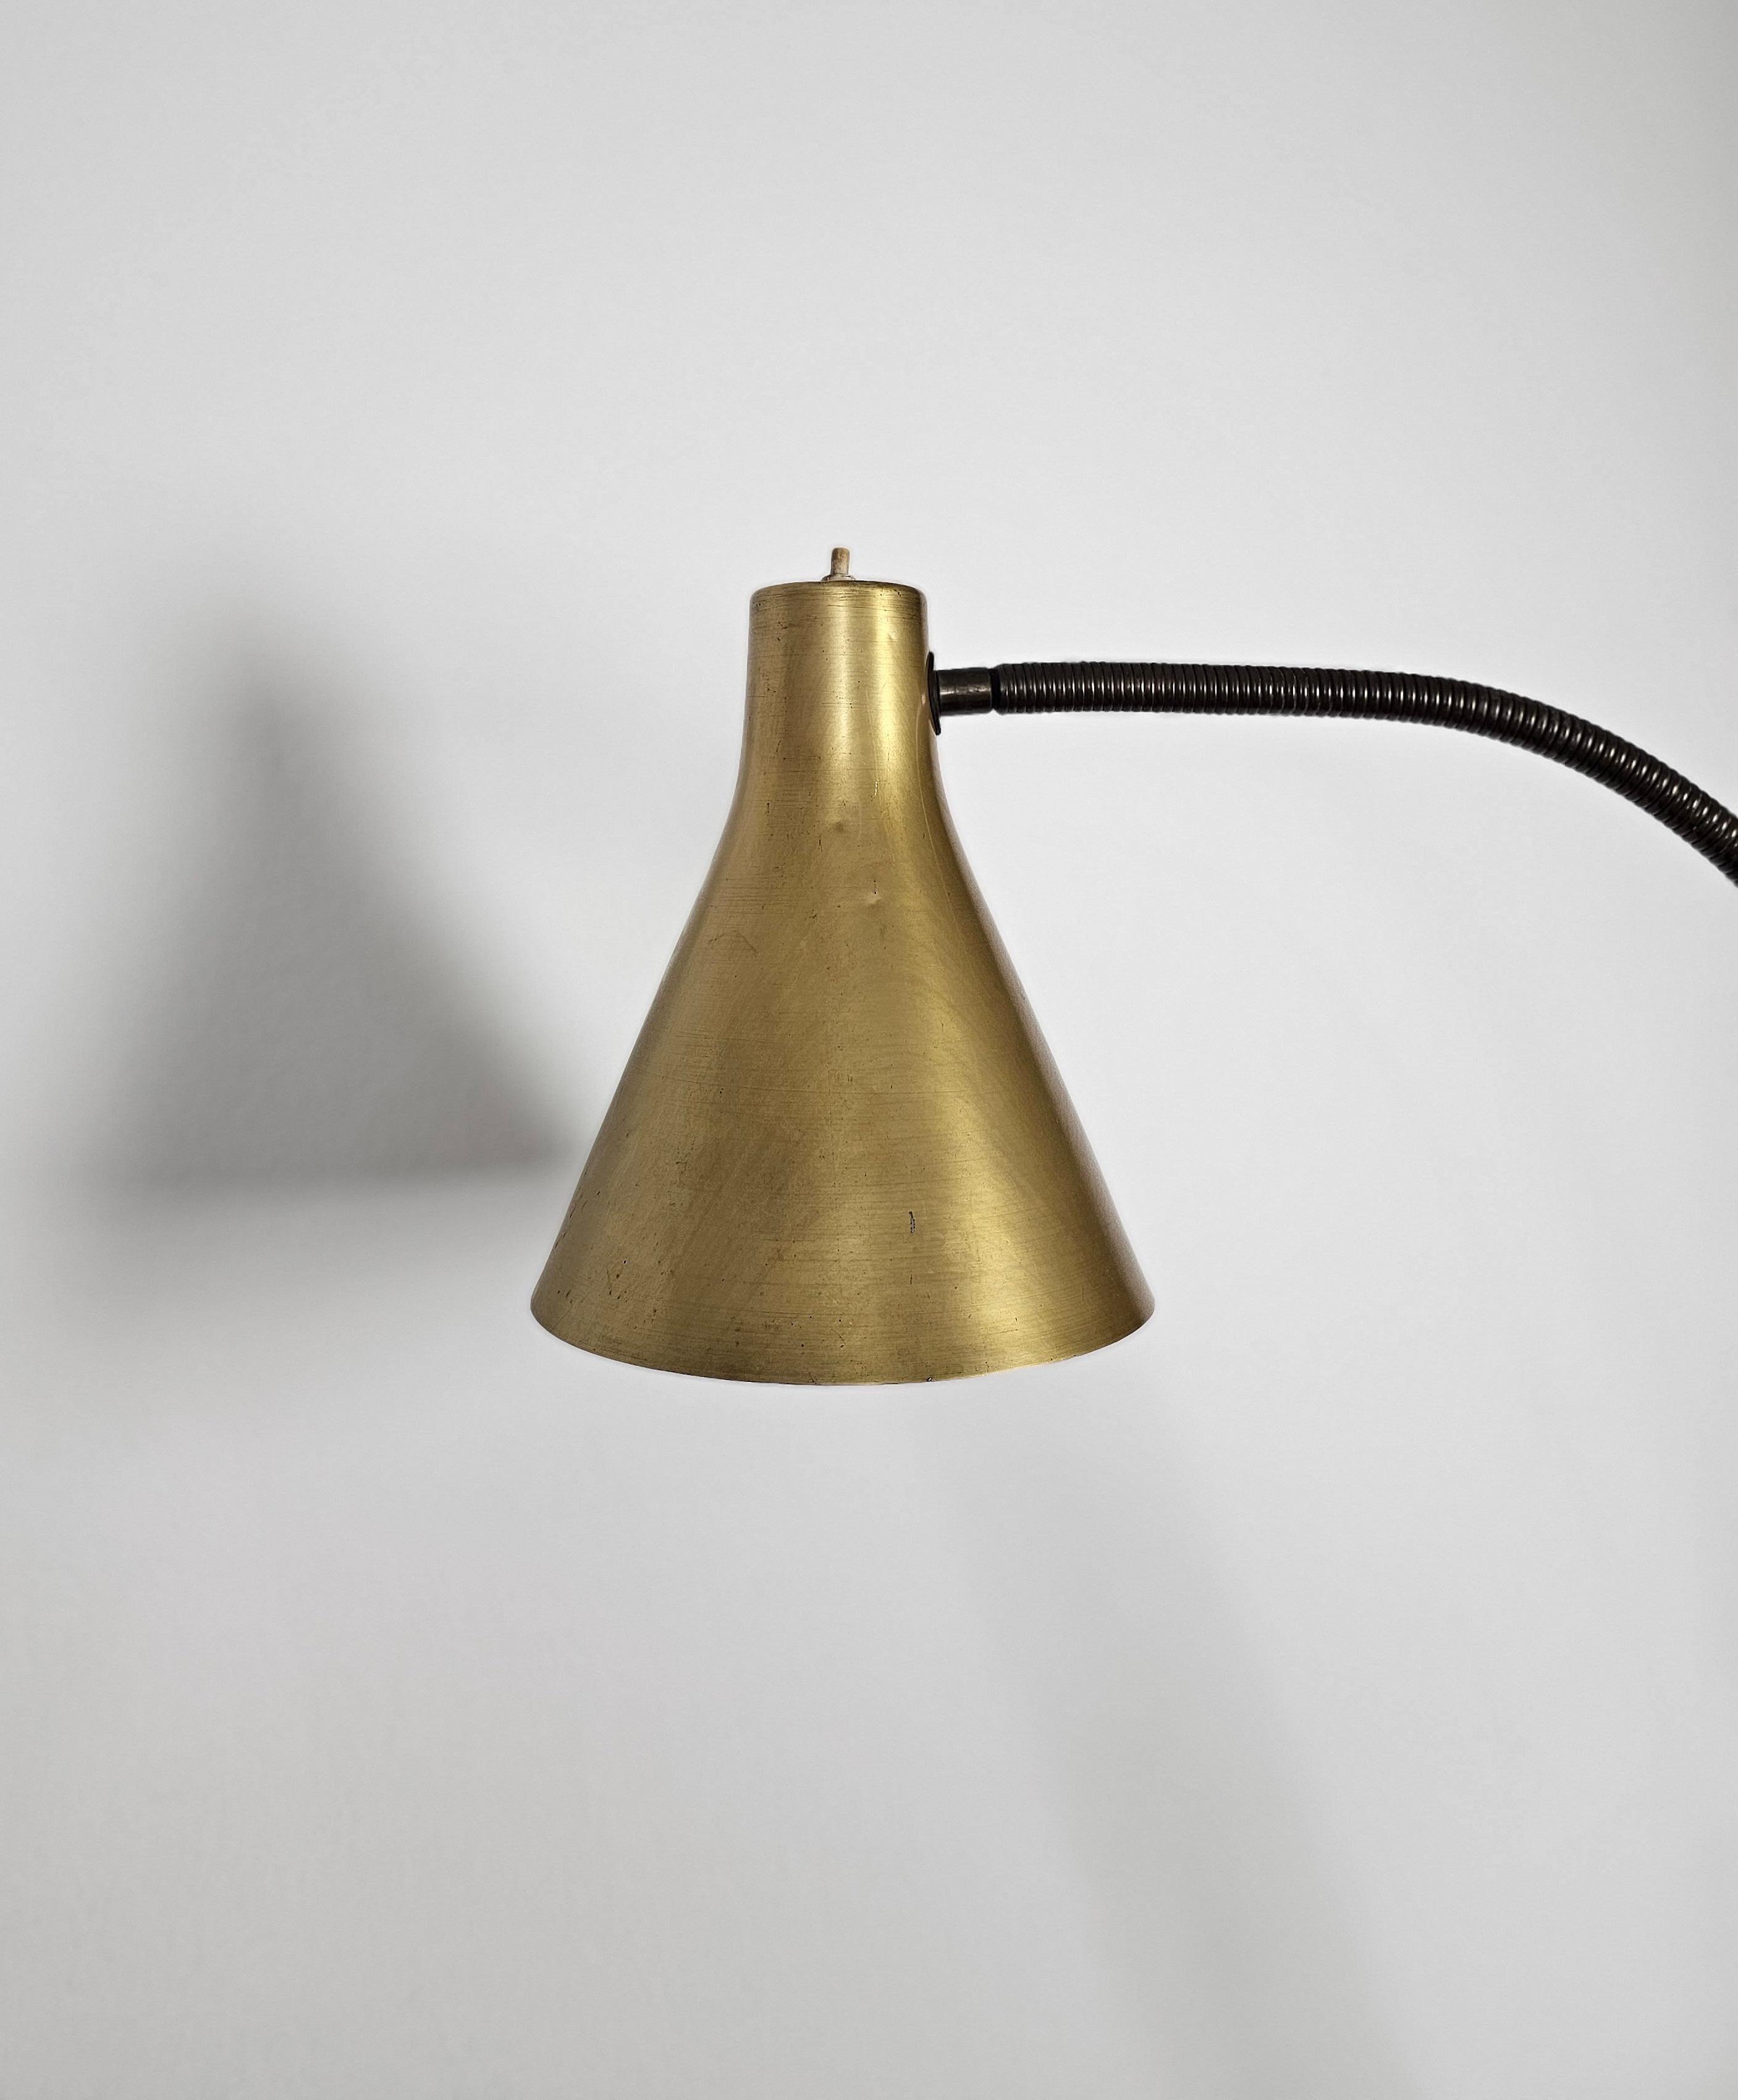 Floor Lamp Brass Golden Aluminum Midcentury Modern Italian Design 1950s For Sale 2